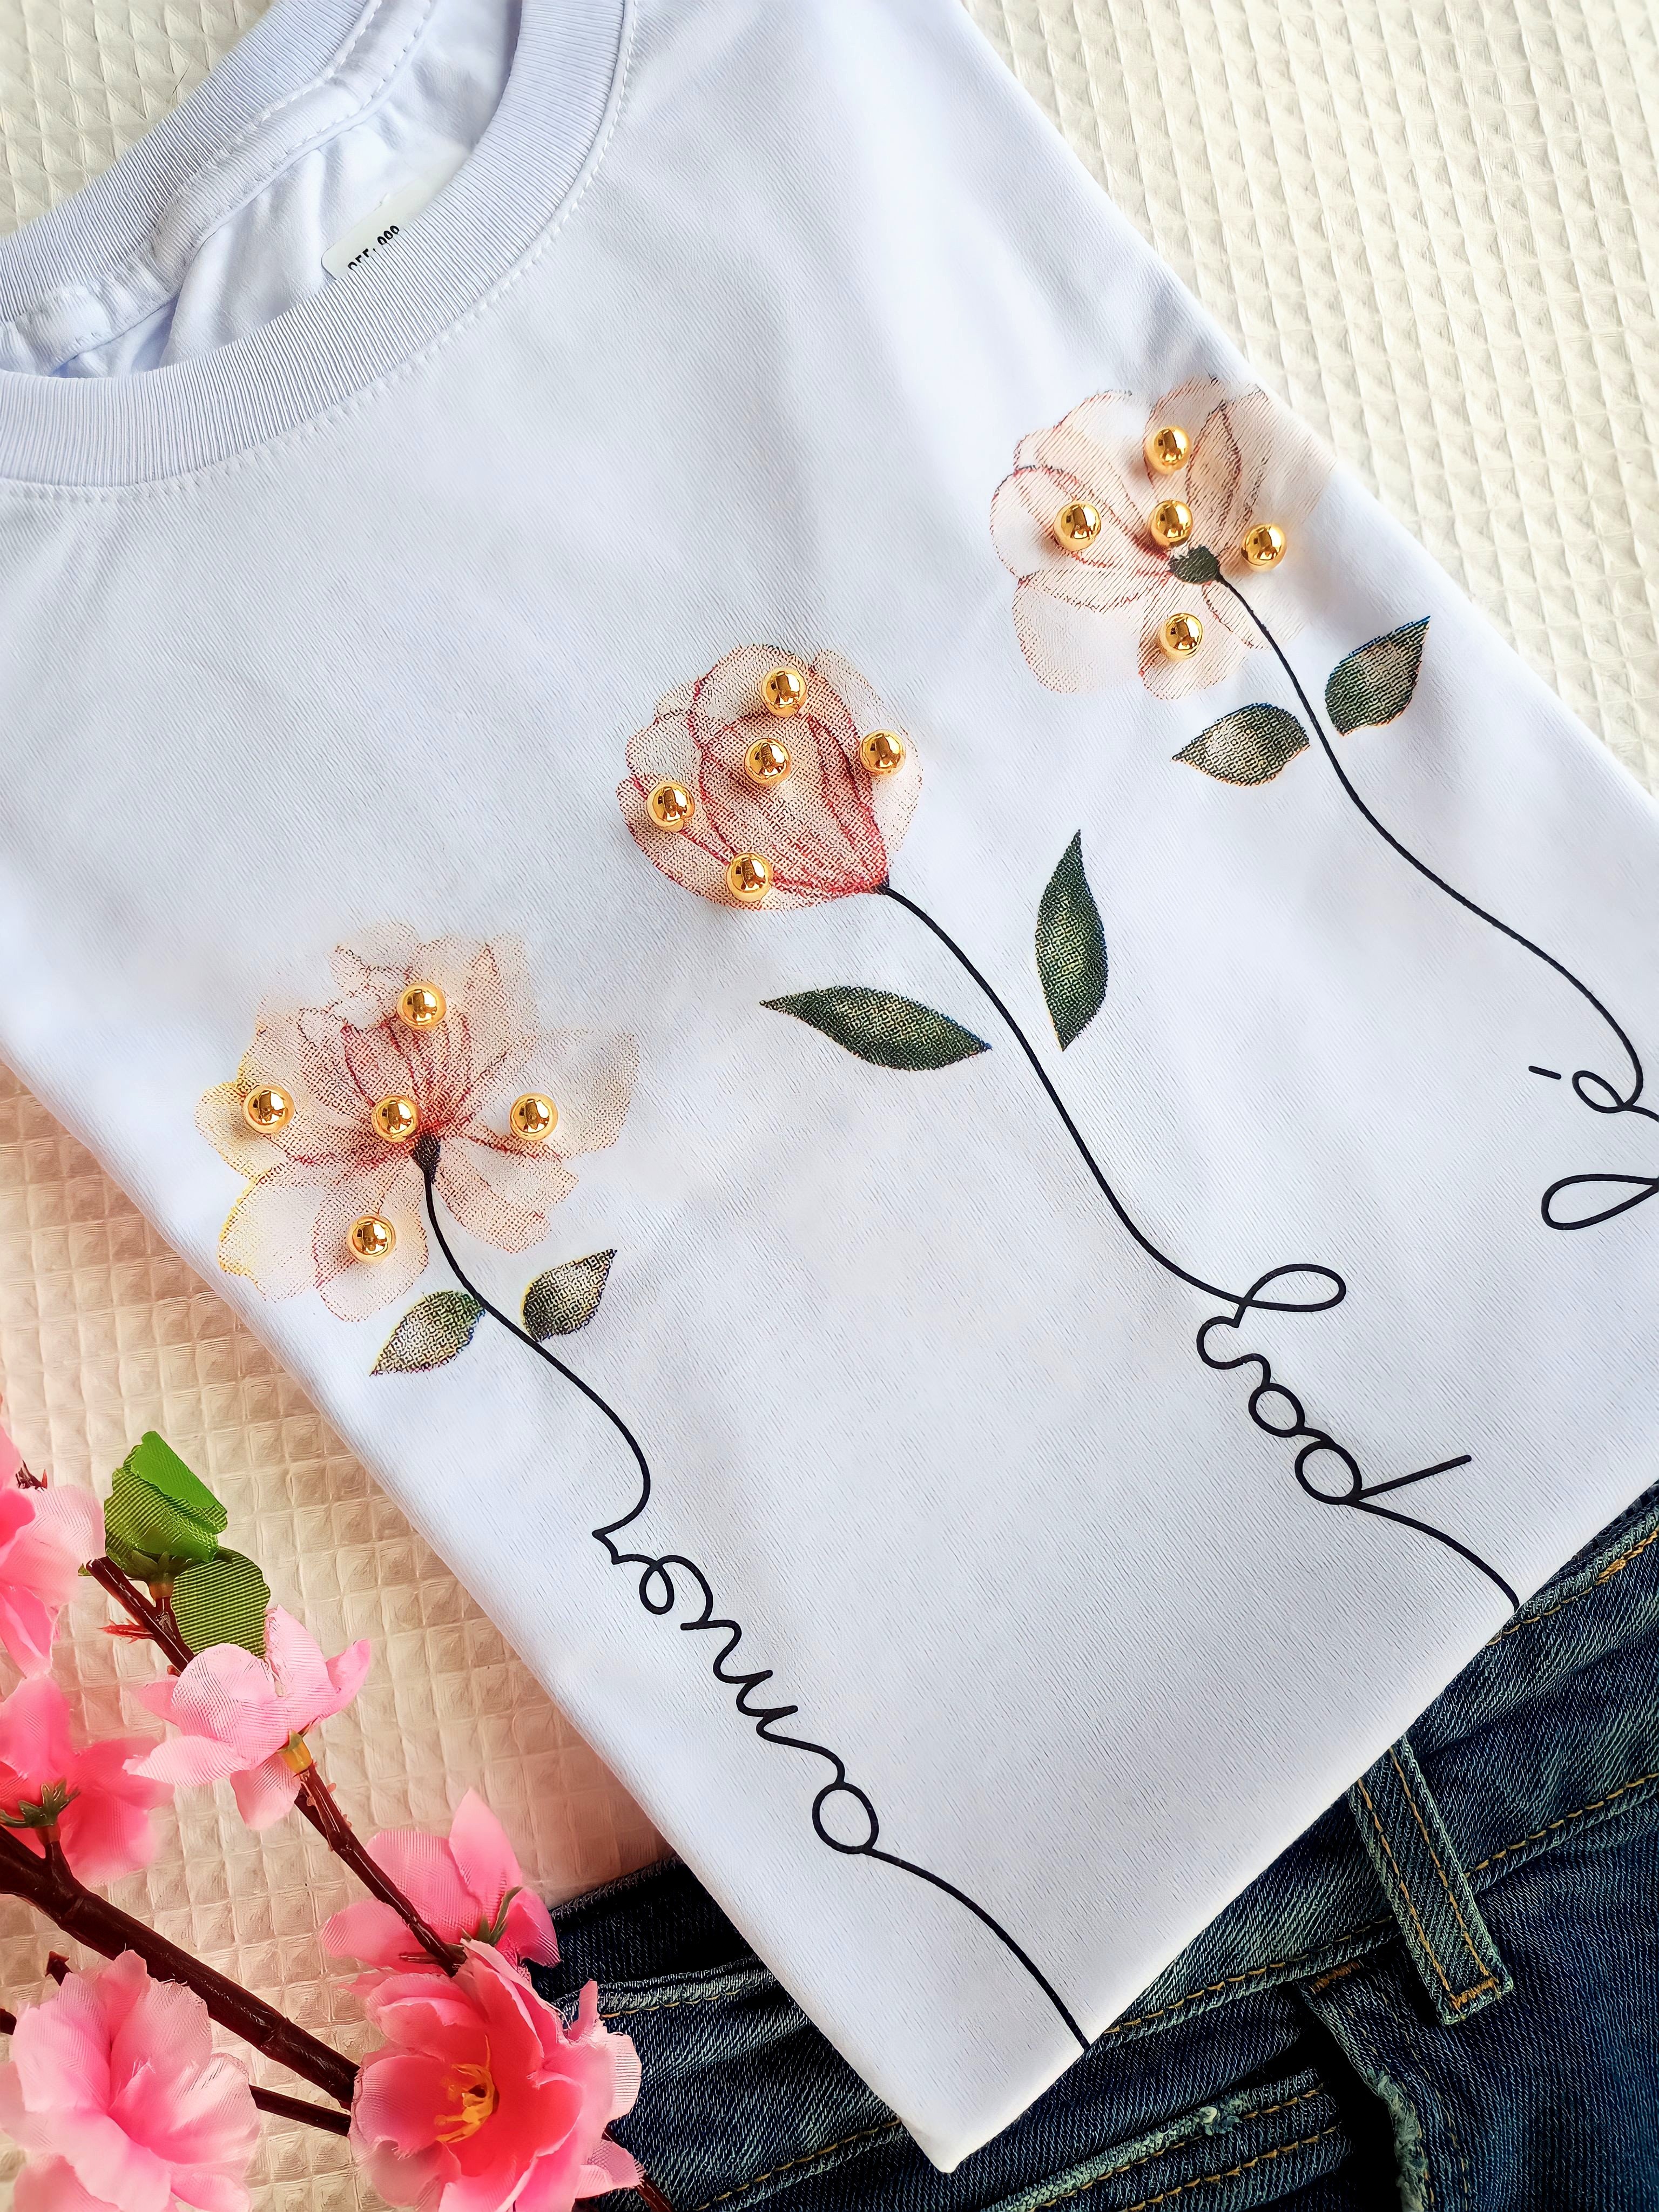 T'Shirts super estilosas - Flor de Lótus Moda Feminina